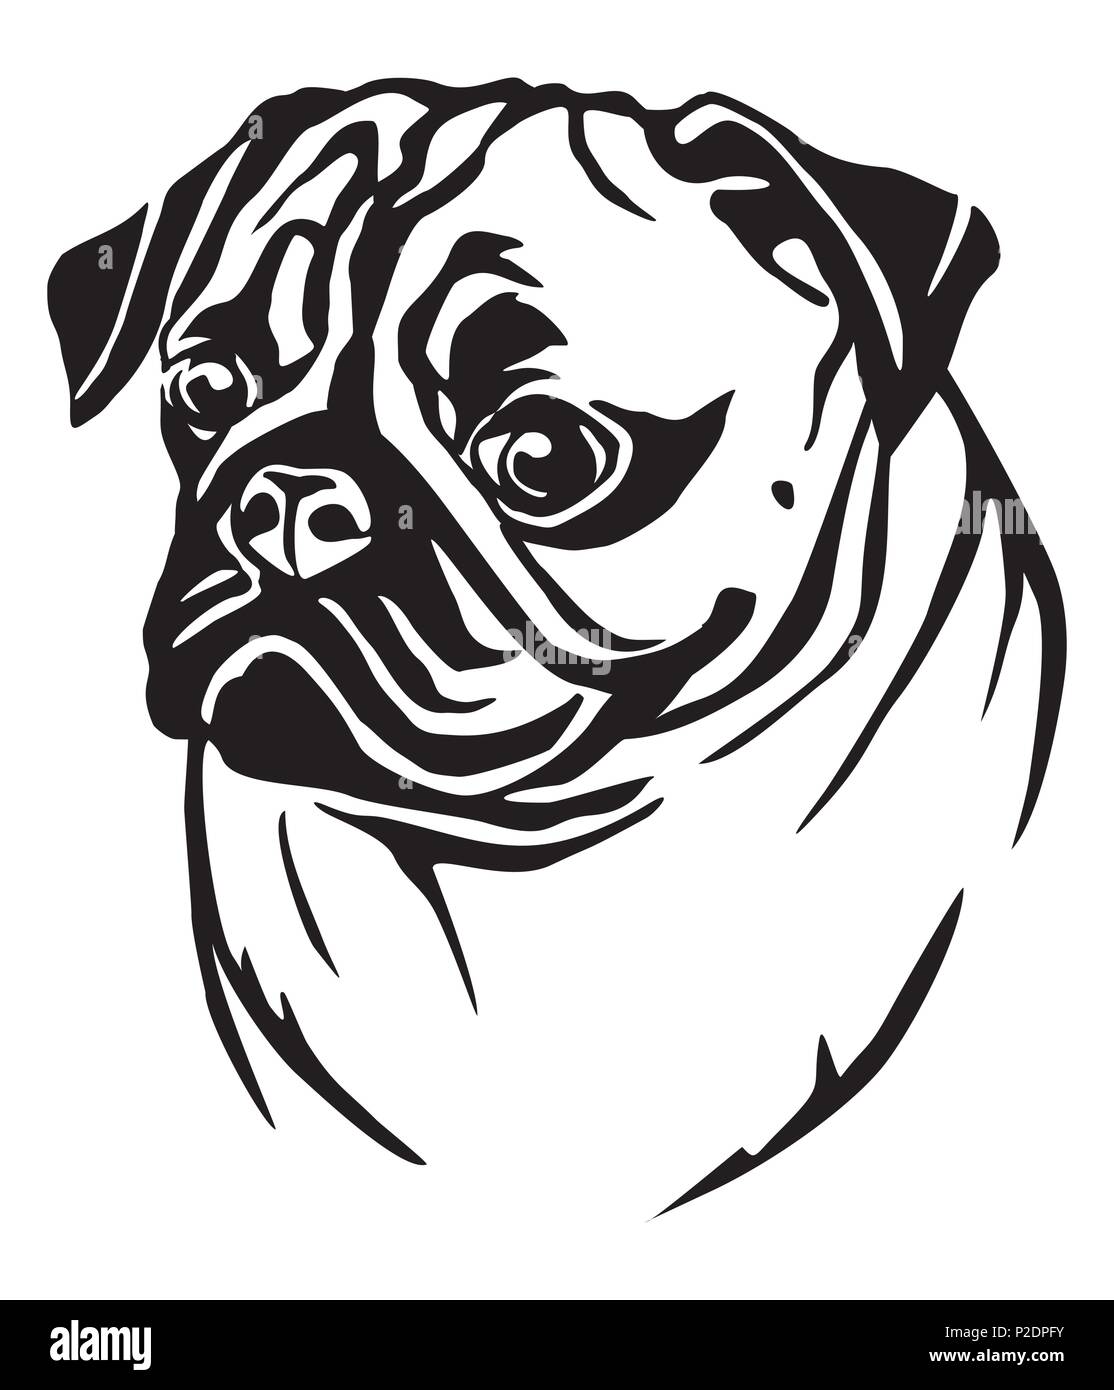 Portrait de profil décoratif en Pug dog, vector illustration en couleur noir isolé sur fond blanc Illustration de Vecteur